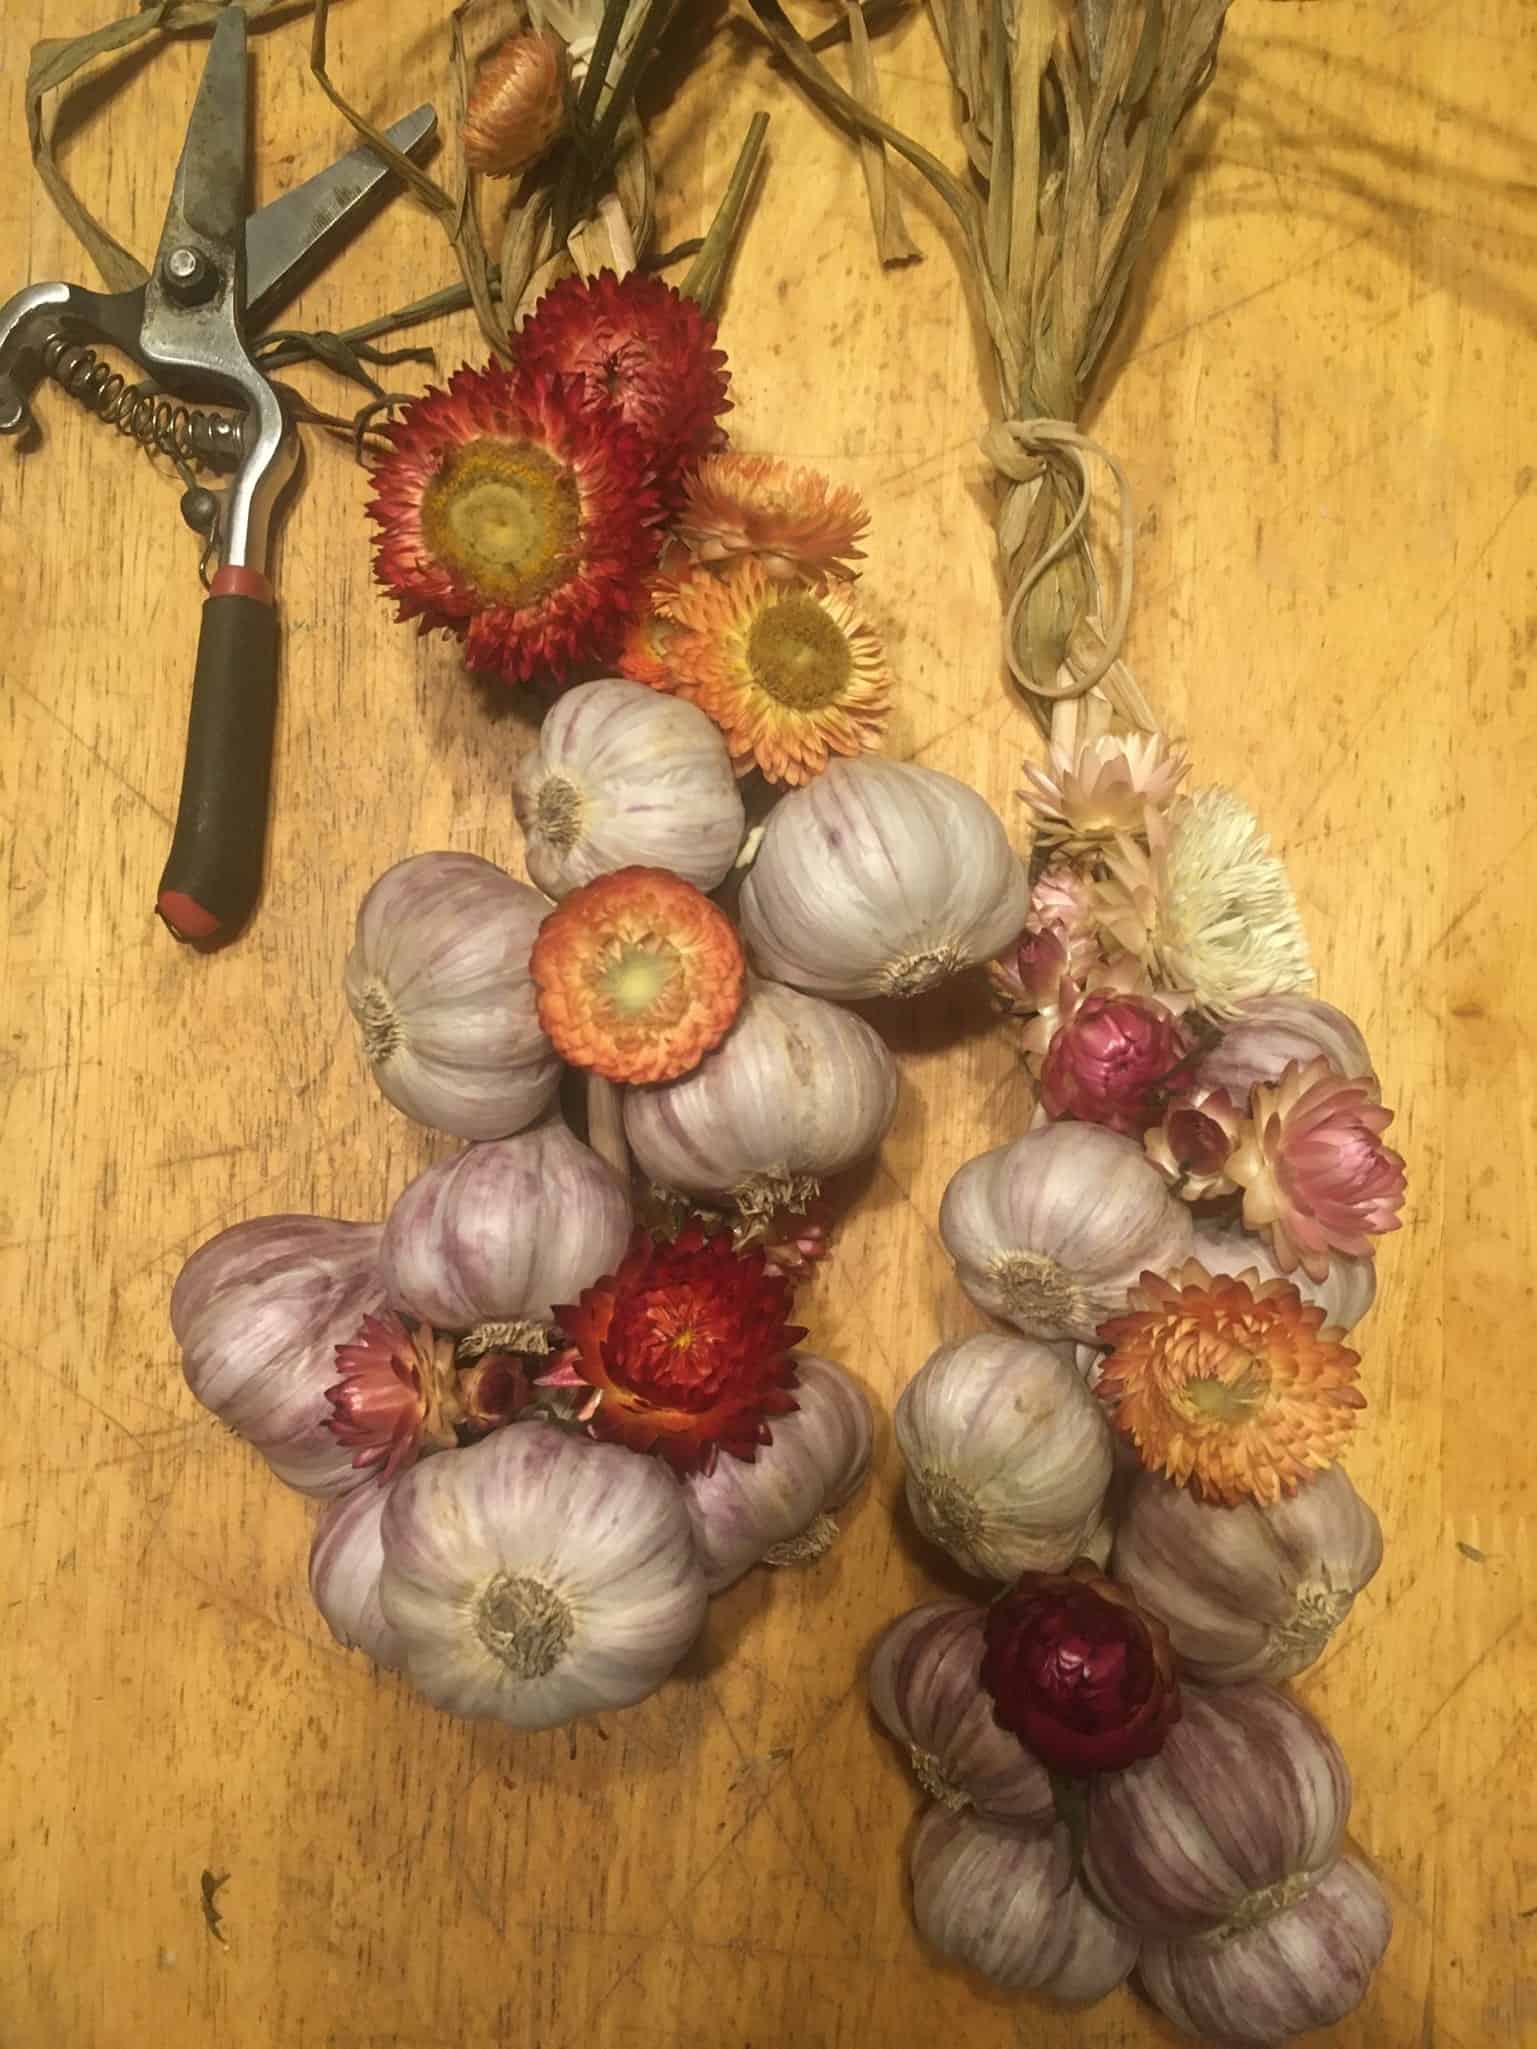 Garlic braid with flowers